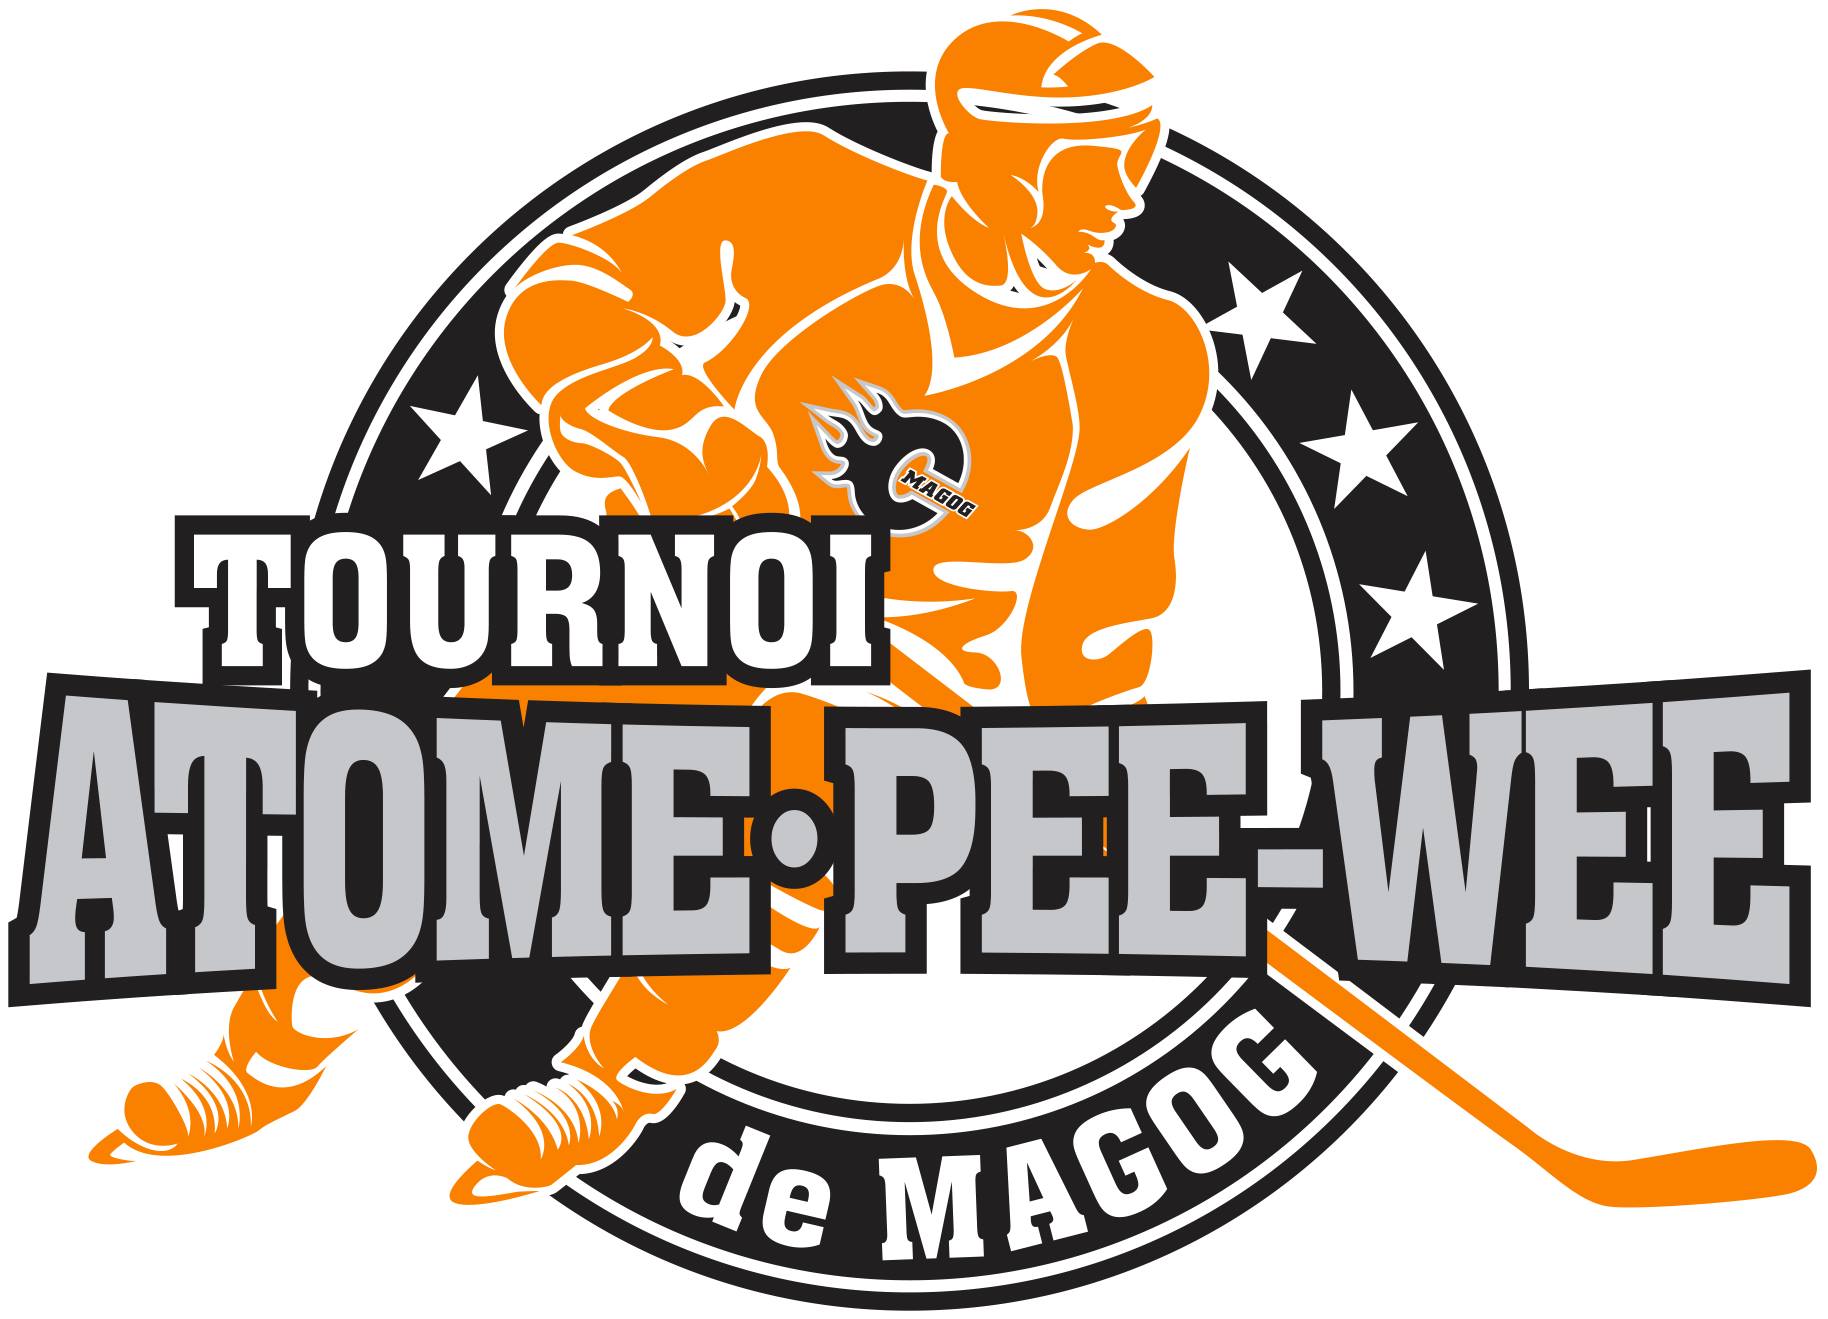 logo tournoi atome pee-wee de Magog